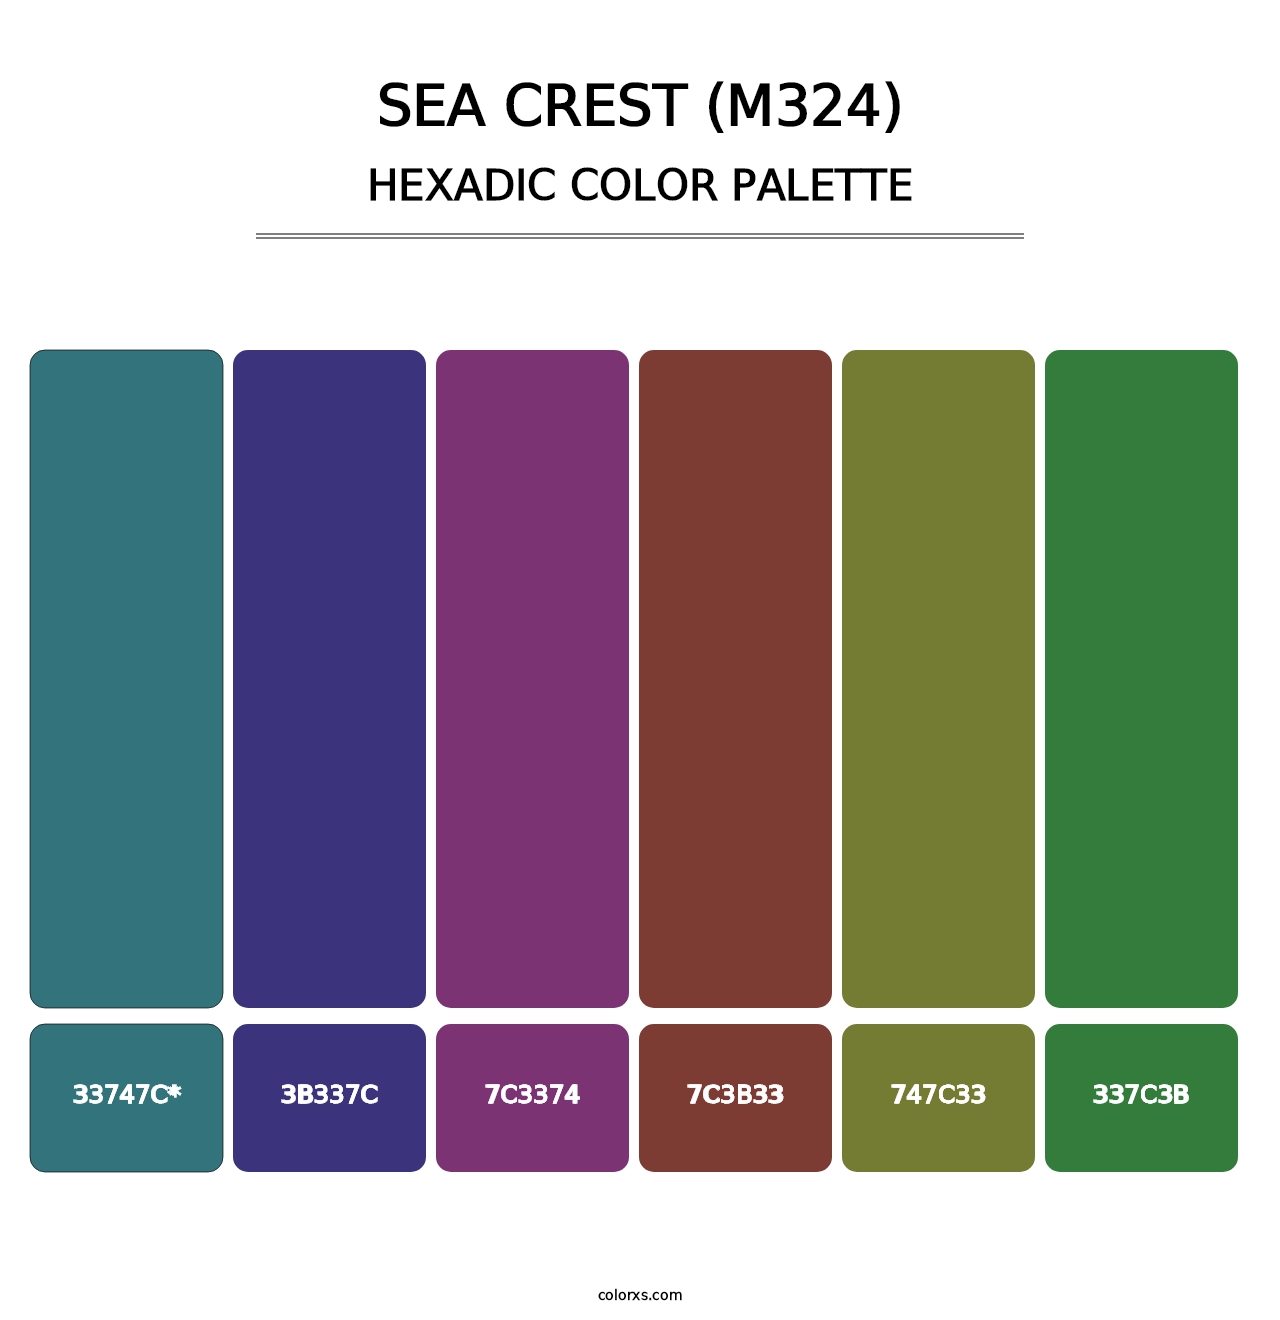 Sea Crest (M324) - Hexadic Color Palette